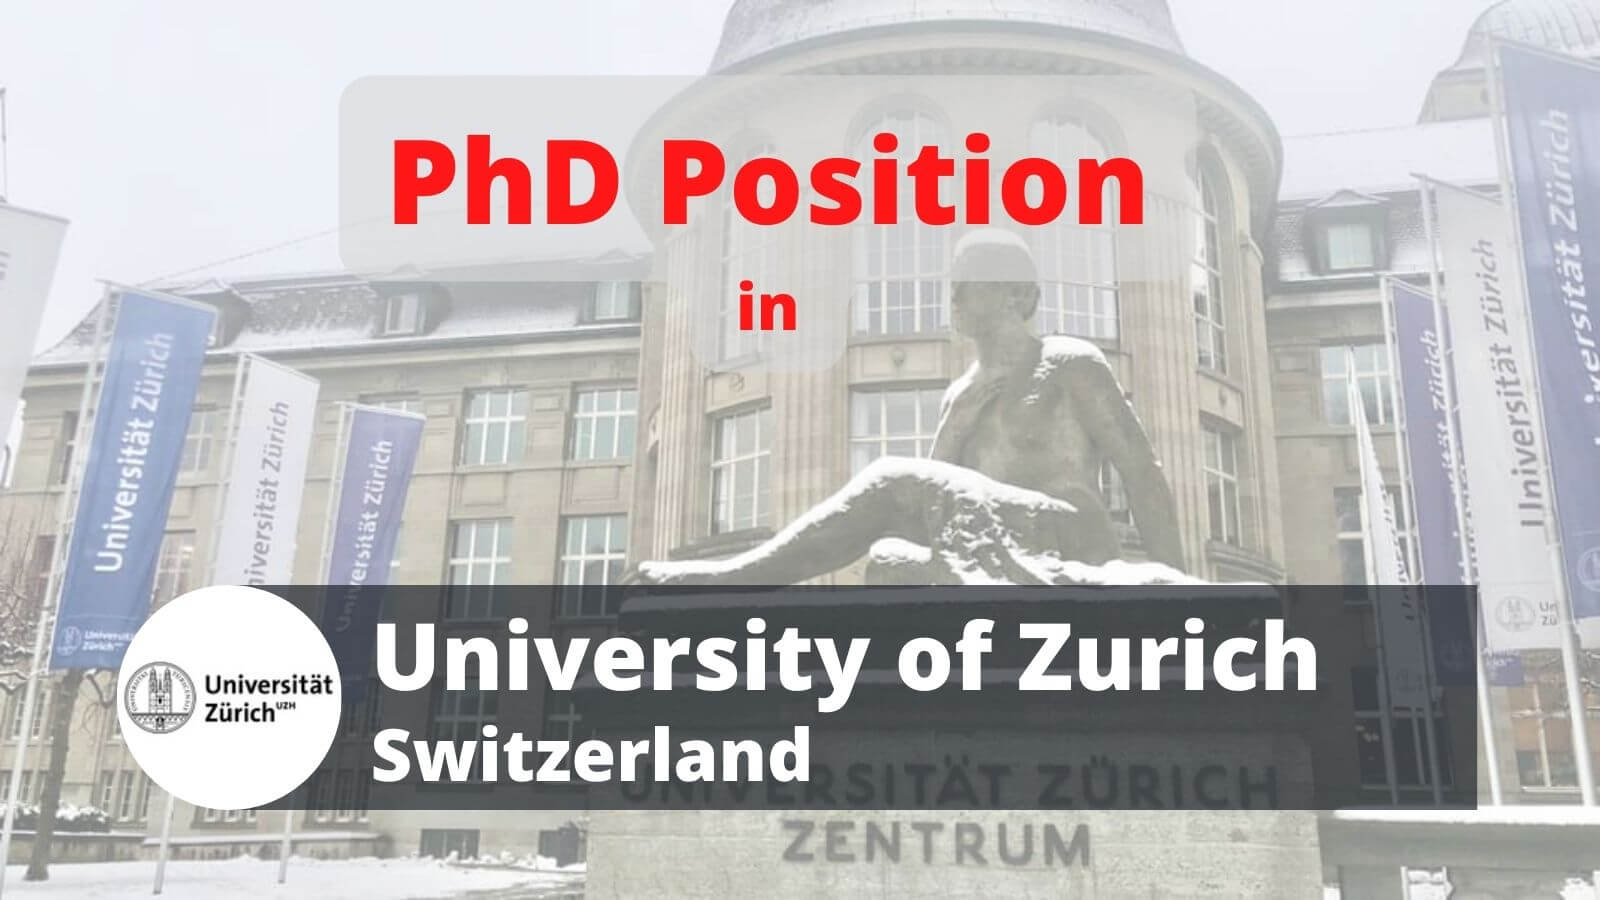 PhD Position in University of Zurich UZH Switzerland